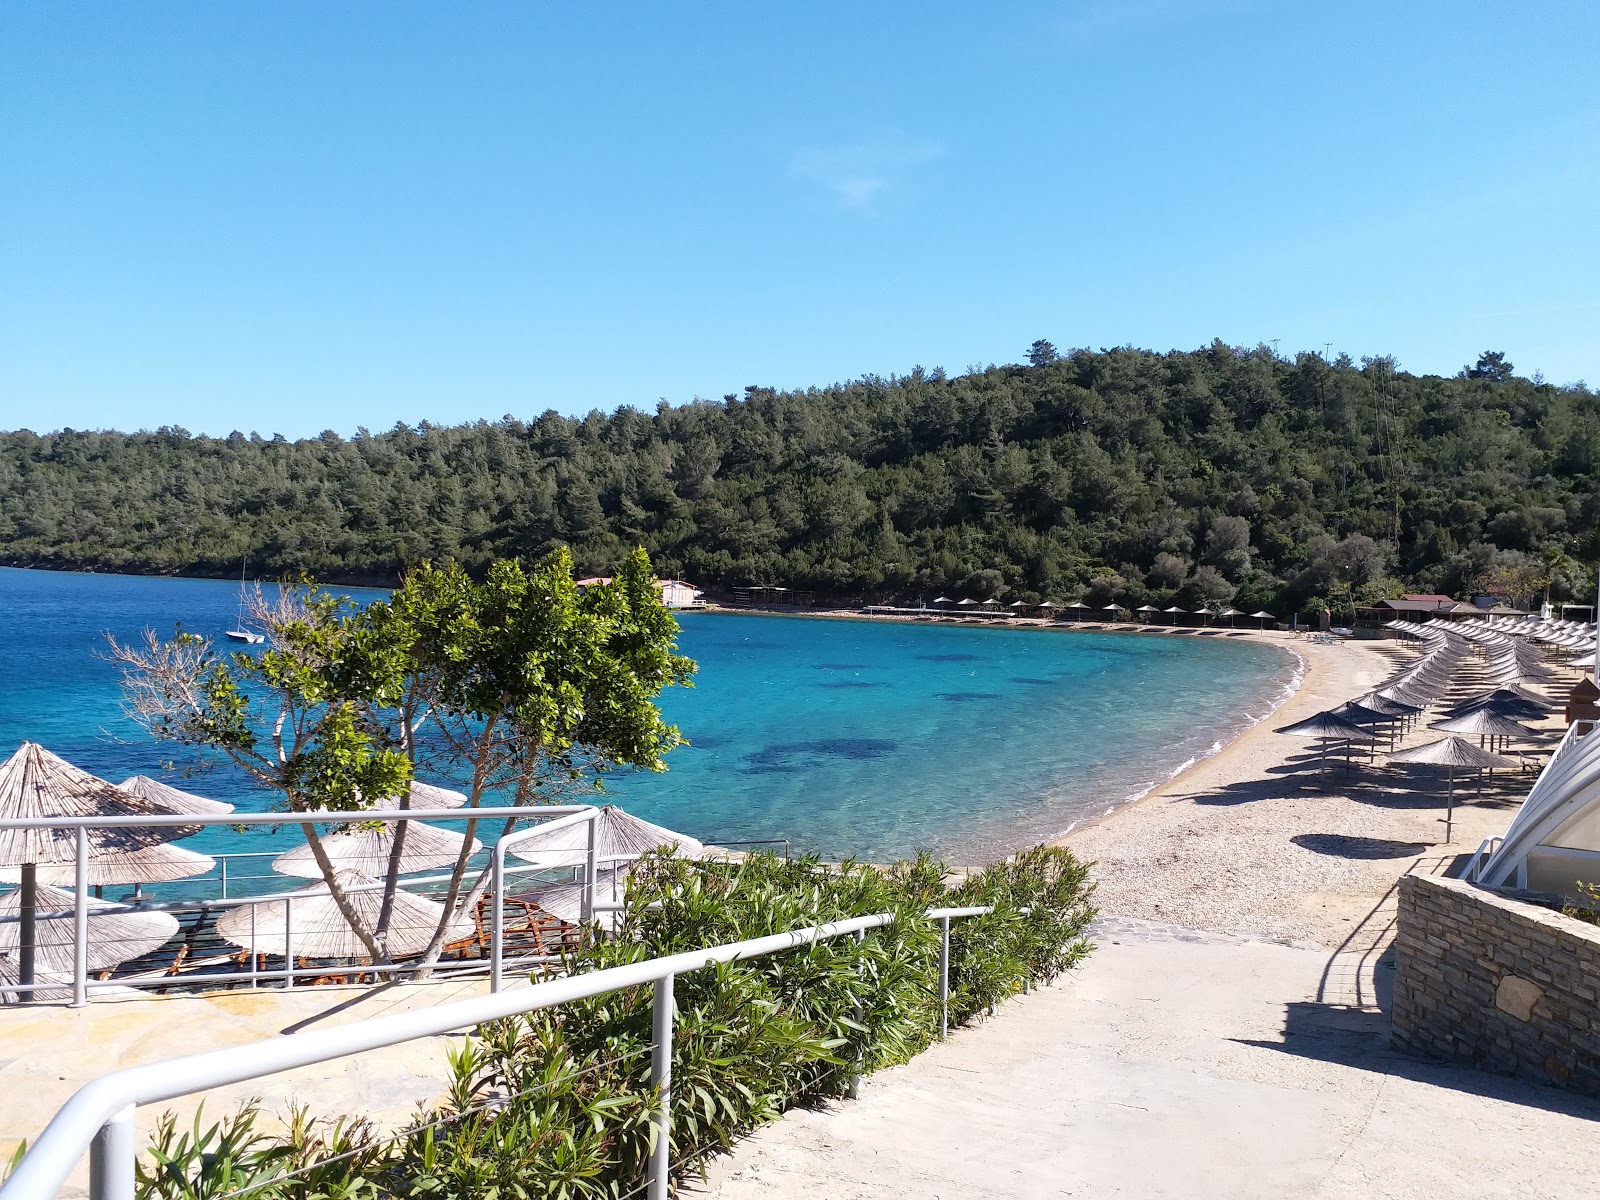 Foto af Hapimag beach med blåt rent vand overflade